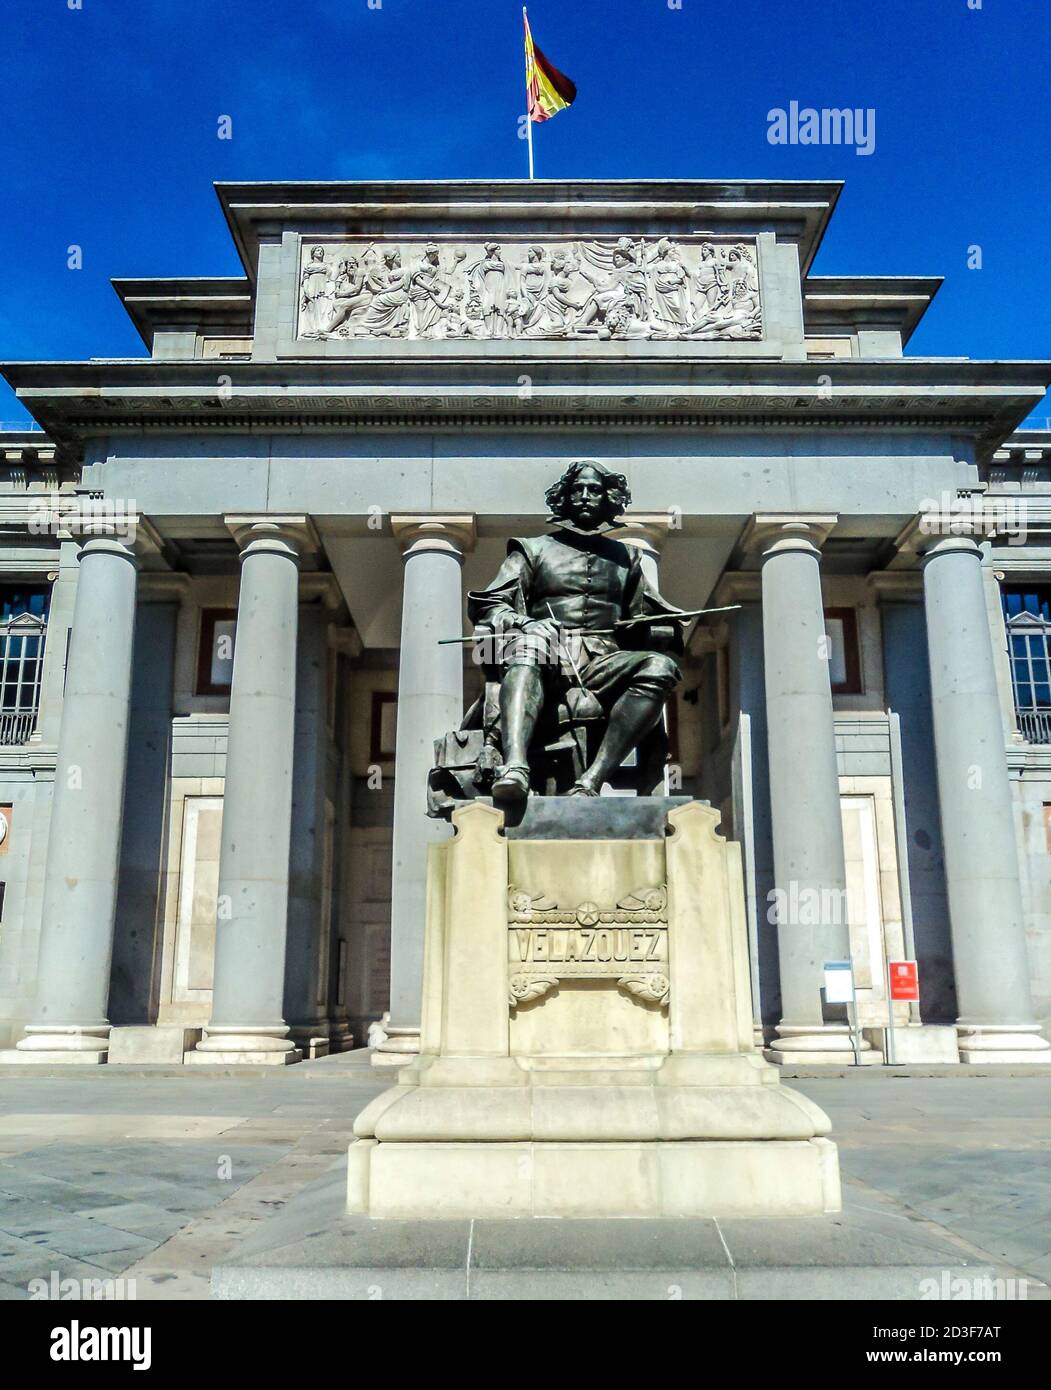 Sculpture of Spanish painter Diego Velasquez in front of Prado museum. Madrid, Spain. Stock Photo